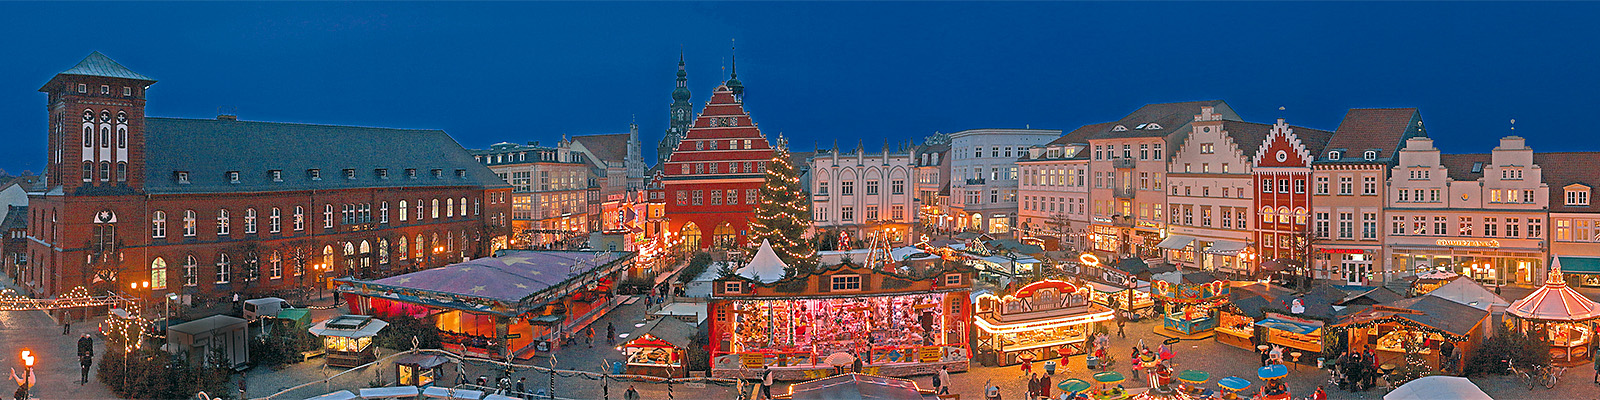 Motiv: Greifswalder Weihnachtsmarkt - Motivnummer: wei-hgw-18